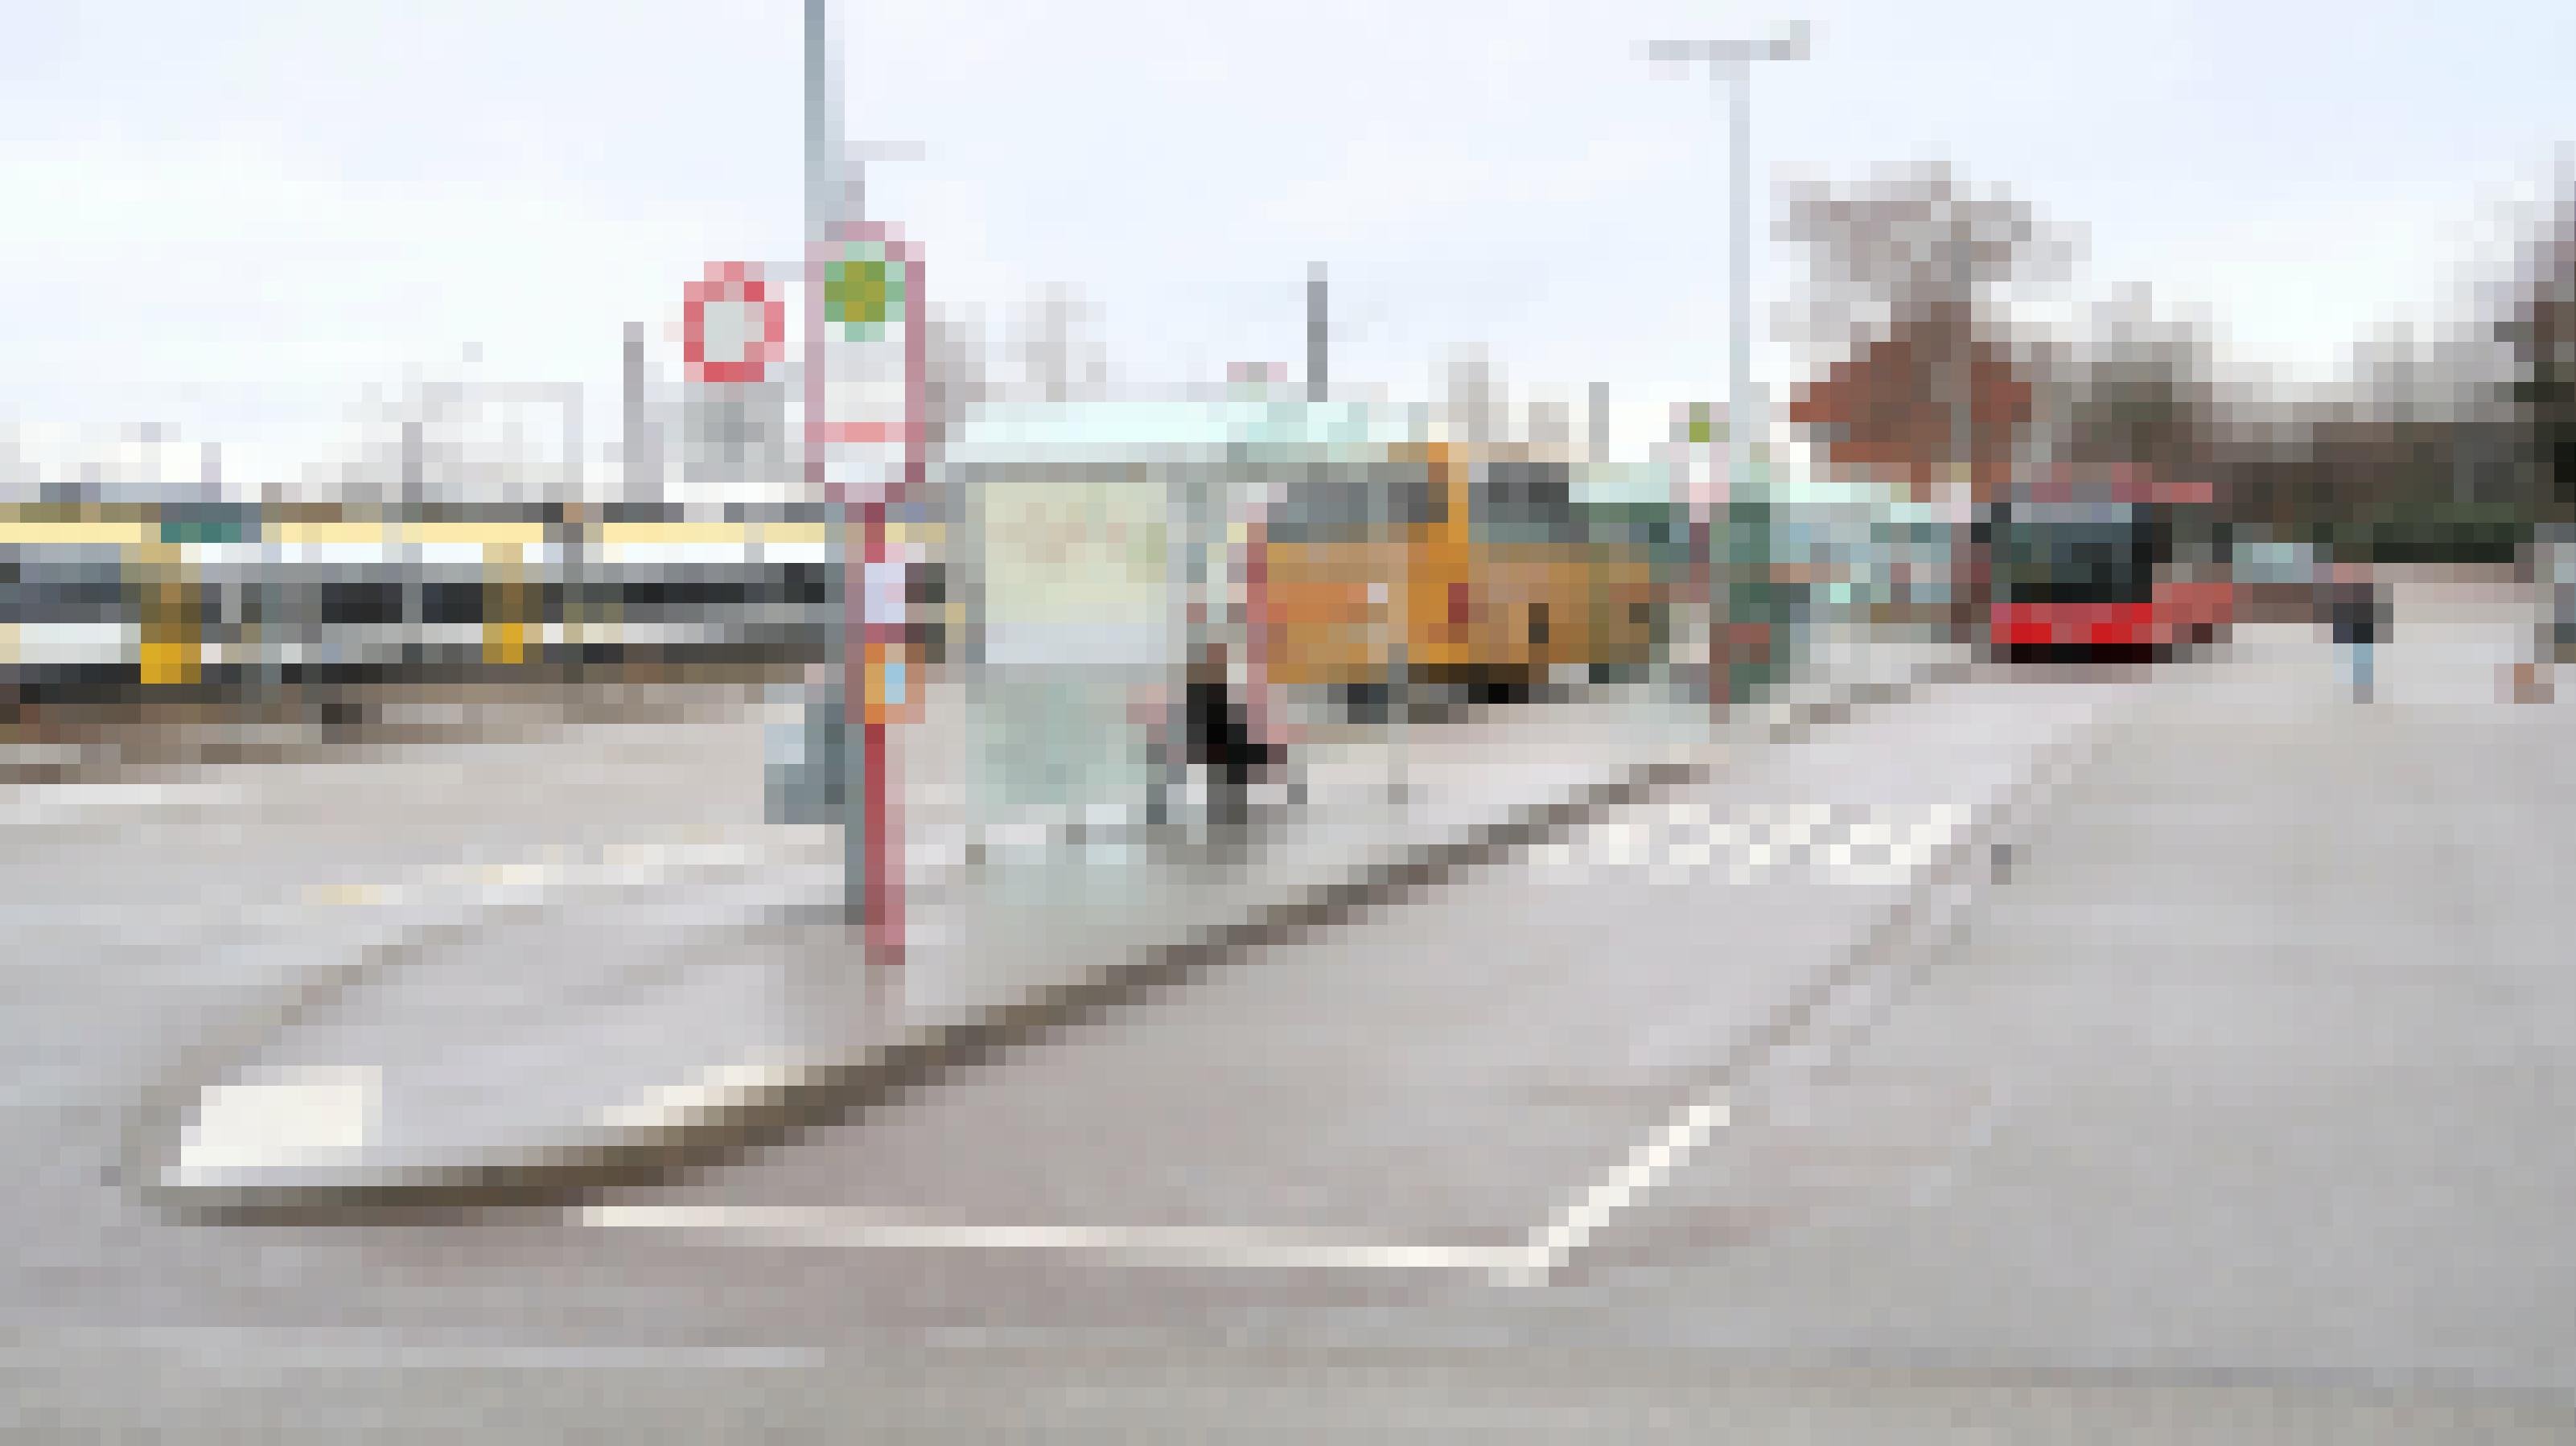 Busbahnhof in Denzlingen mit Bussen und Zügen. Eine Frau führt ihren Hund aus.